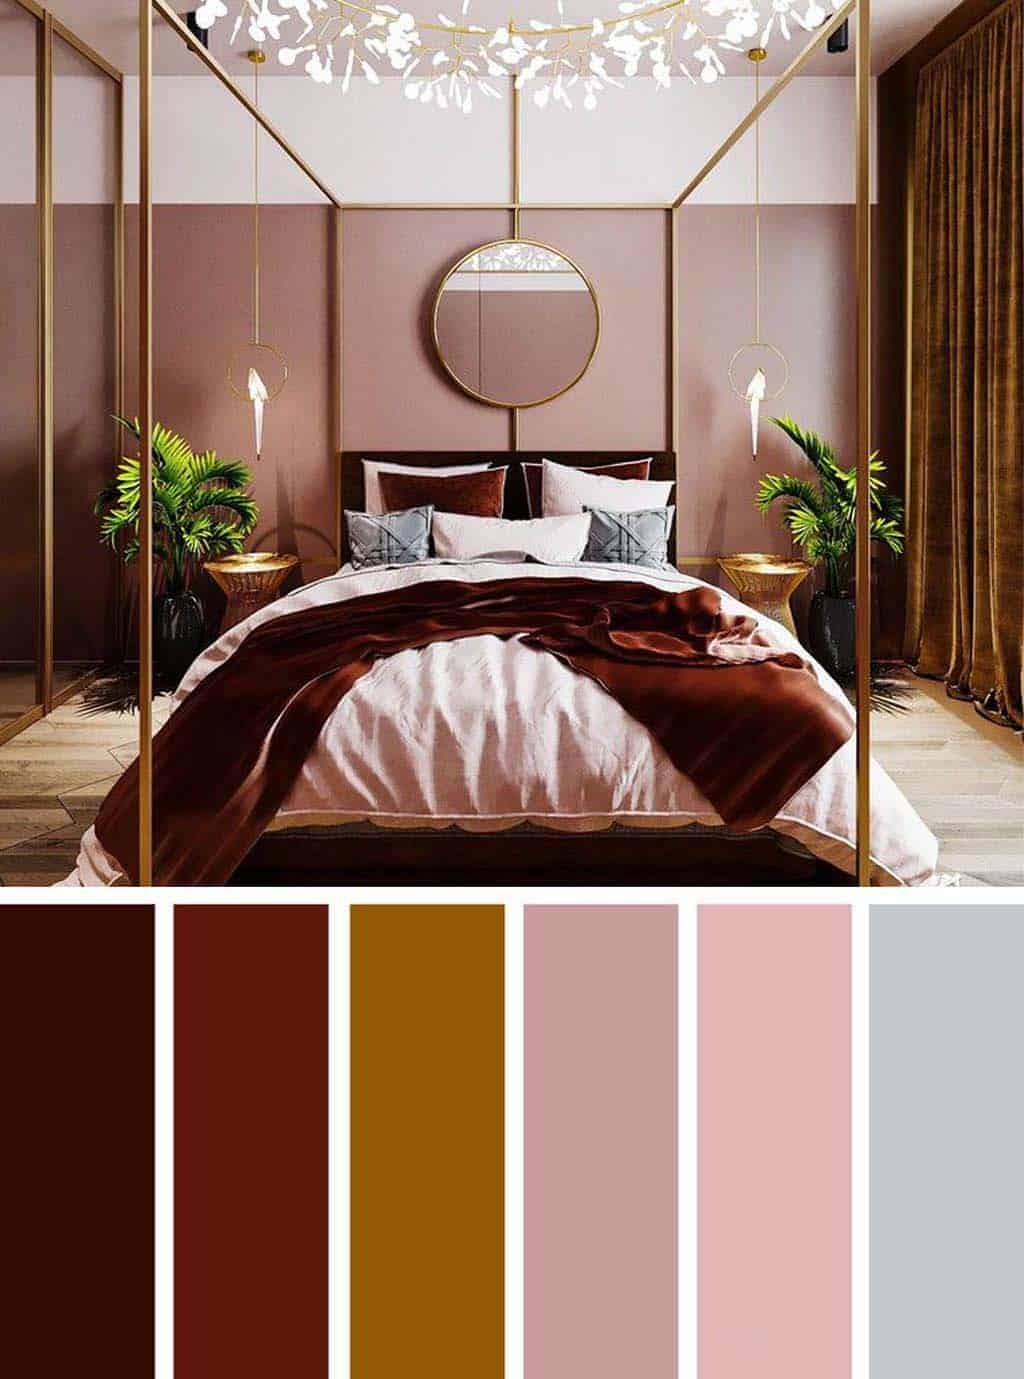 اختاري لون مناسب لغرفتك من هذه الصور , الوان غرف النوم مساء الورد